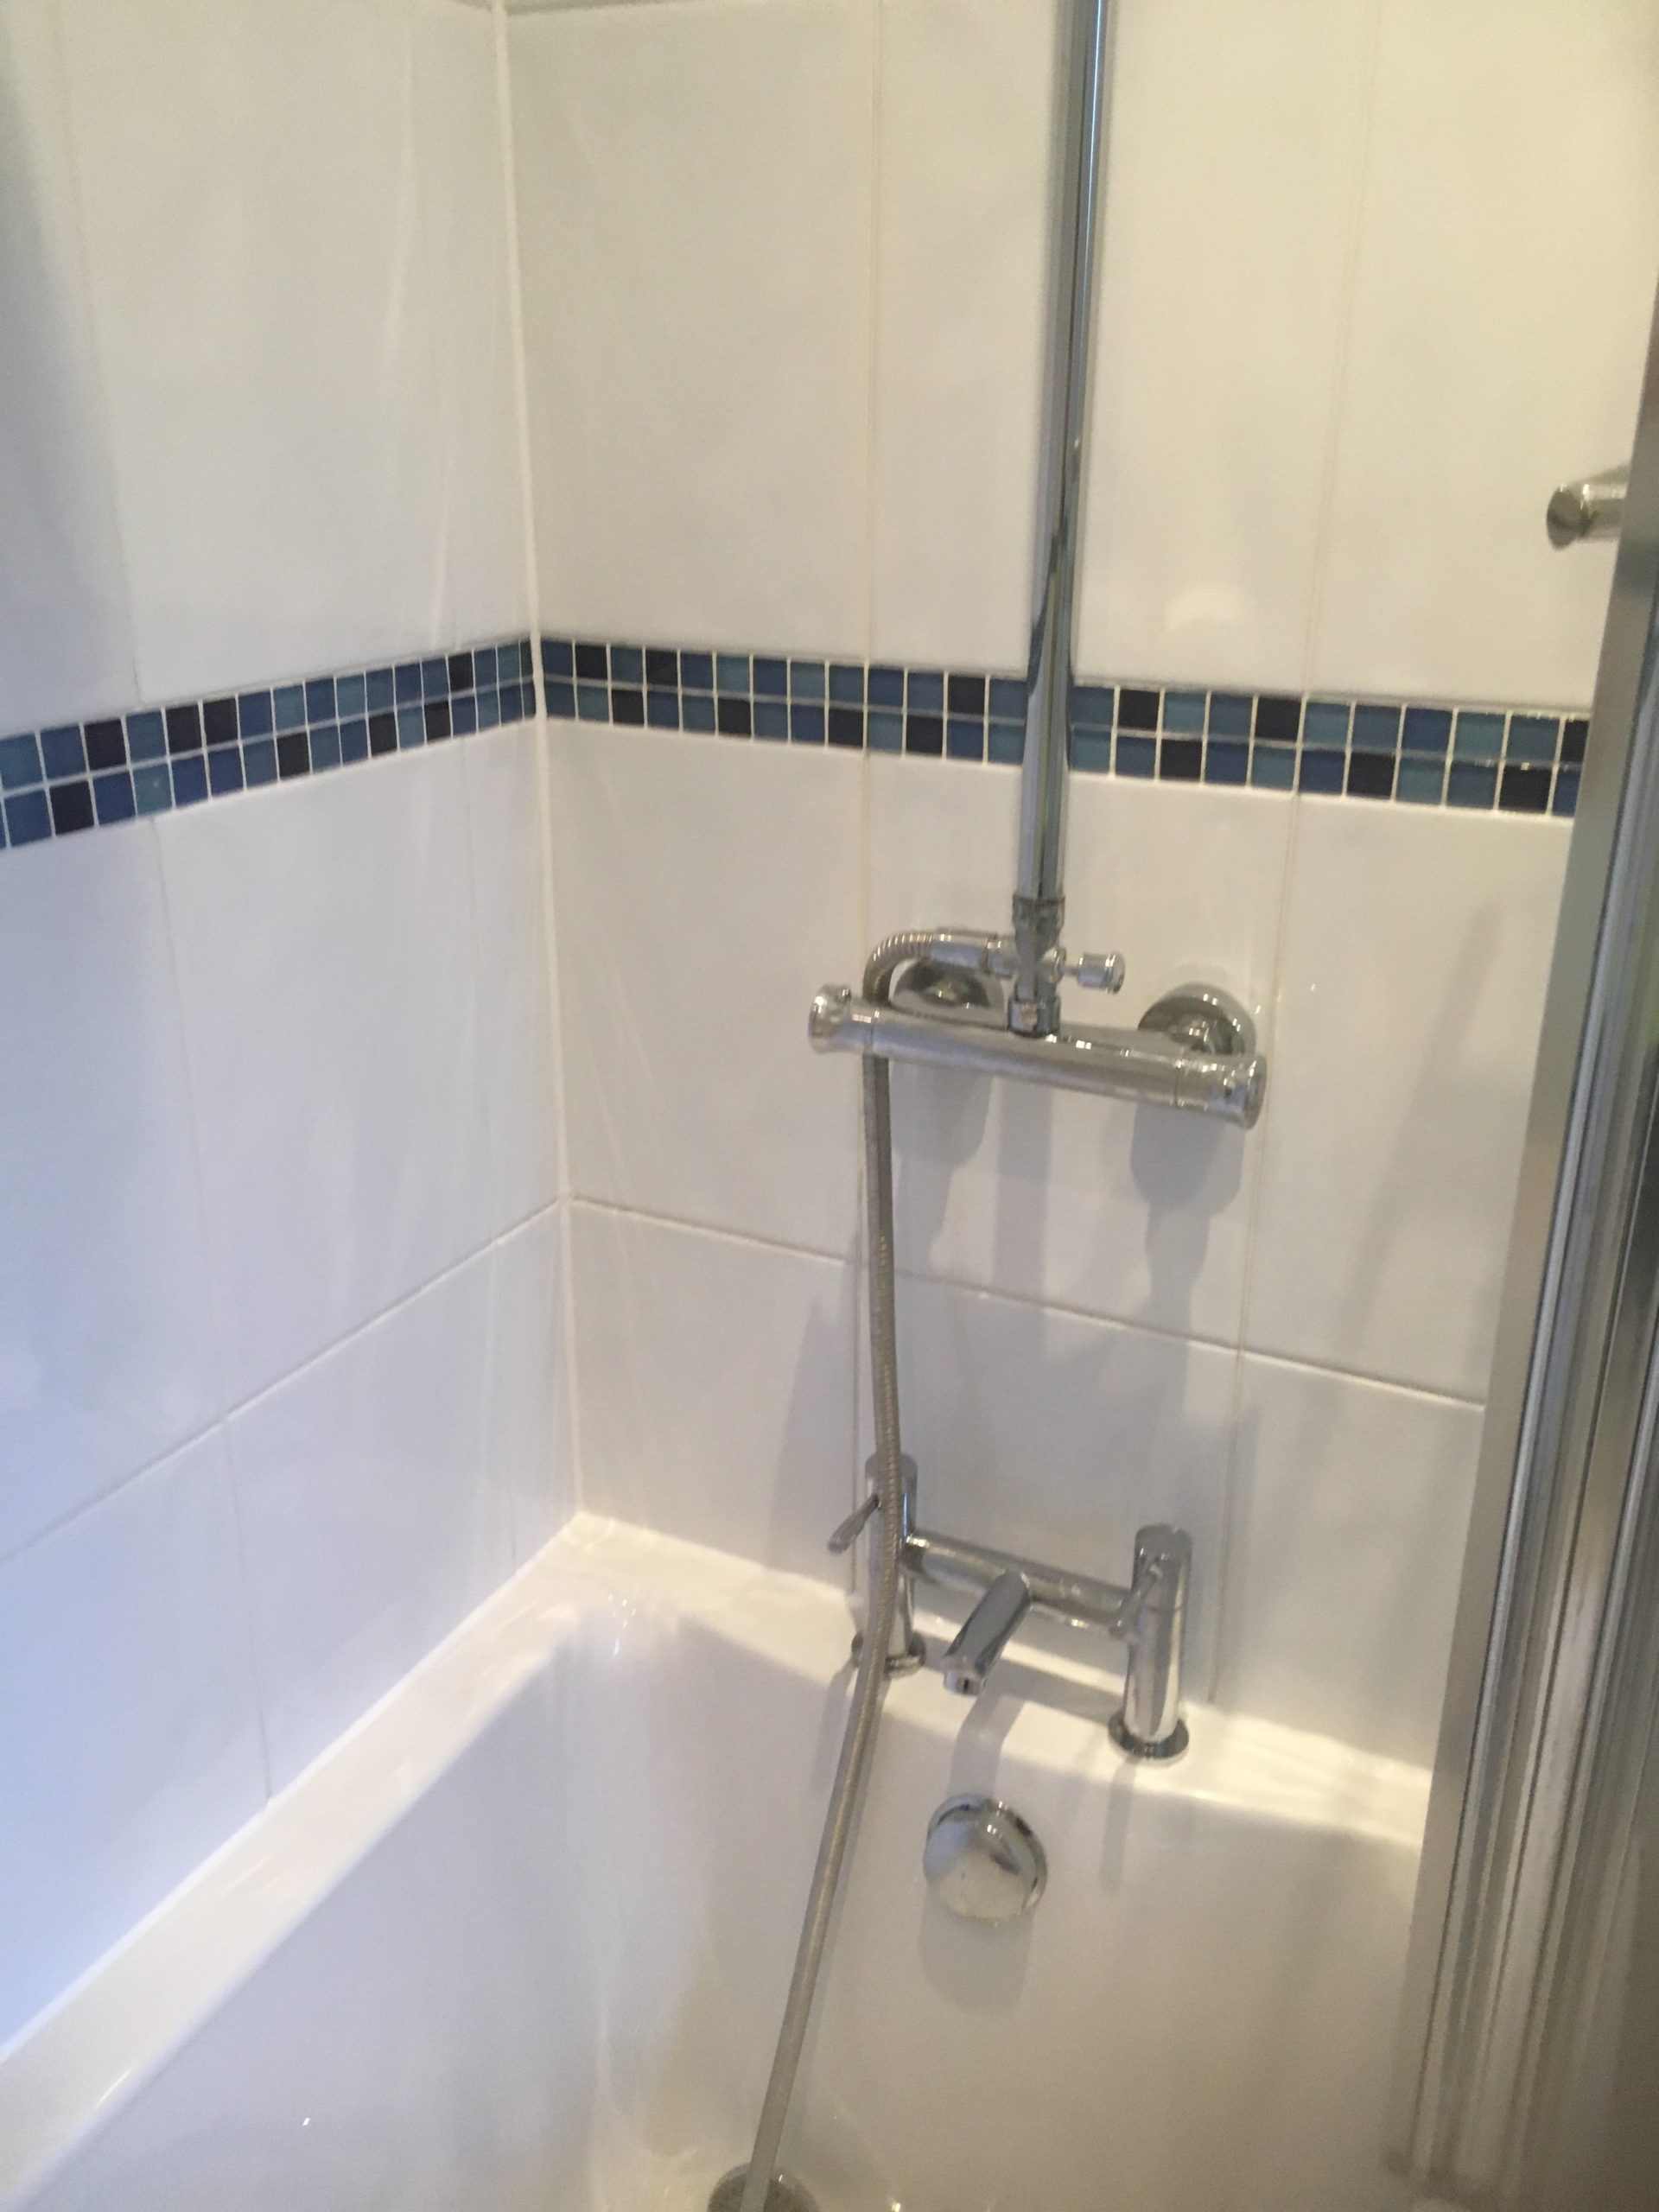 Bathroom Shower Tile After Cleaning Handforth